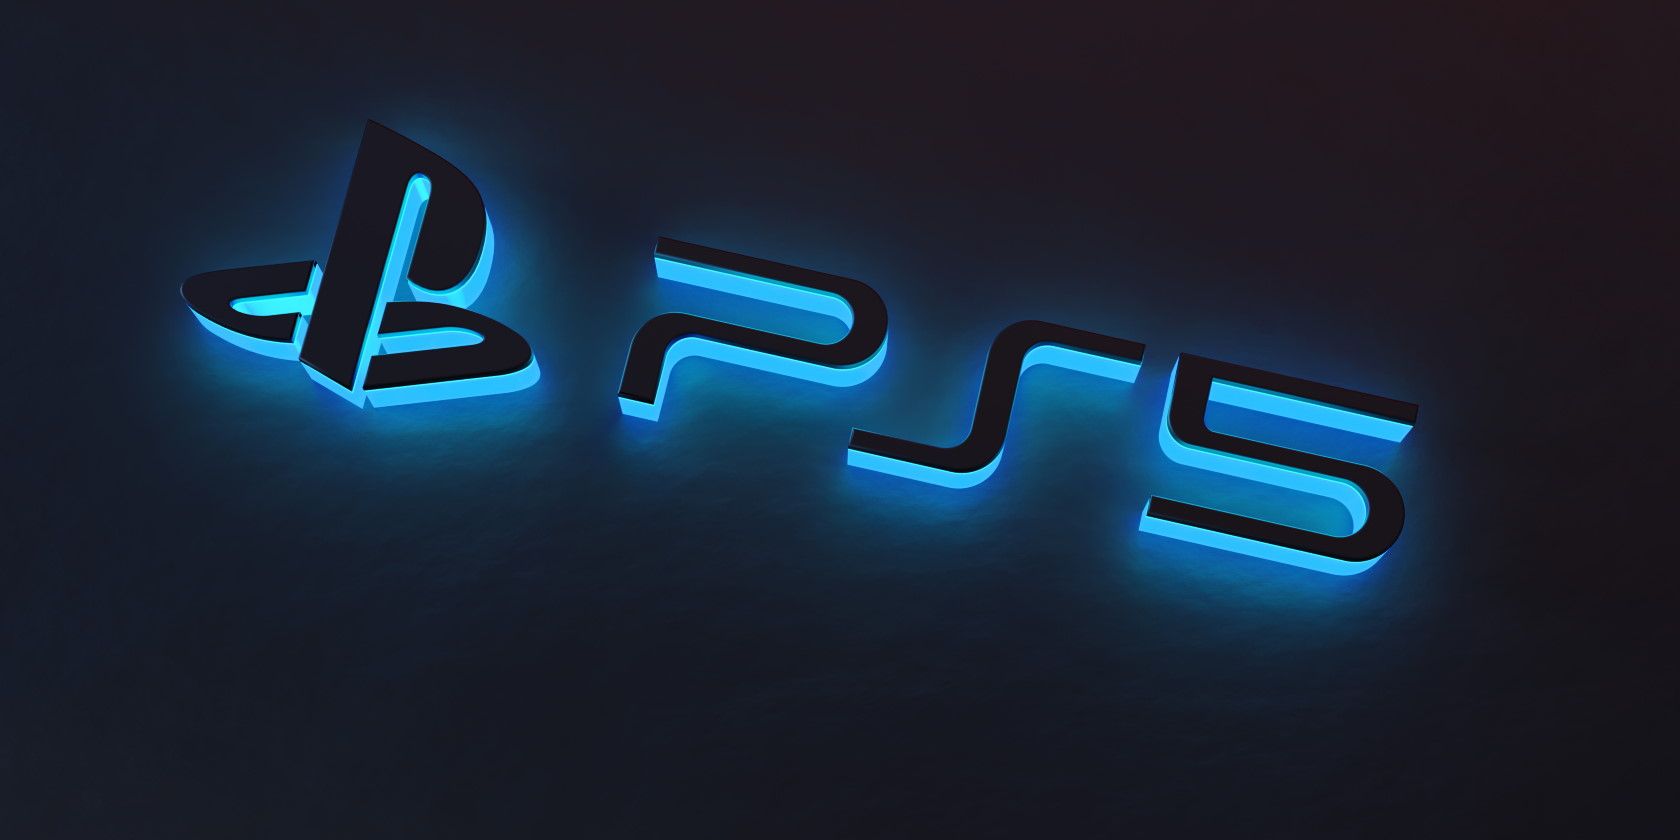 PS5 Console Size Featured - La PlayStation 5 supporta la risoluzione 1440p?